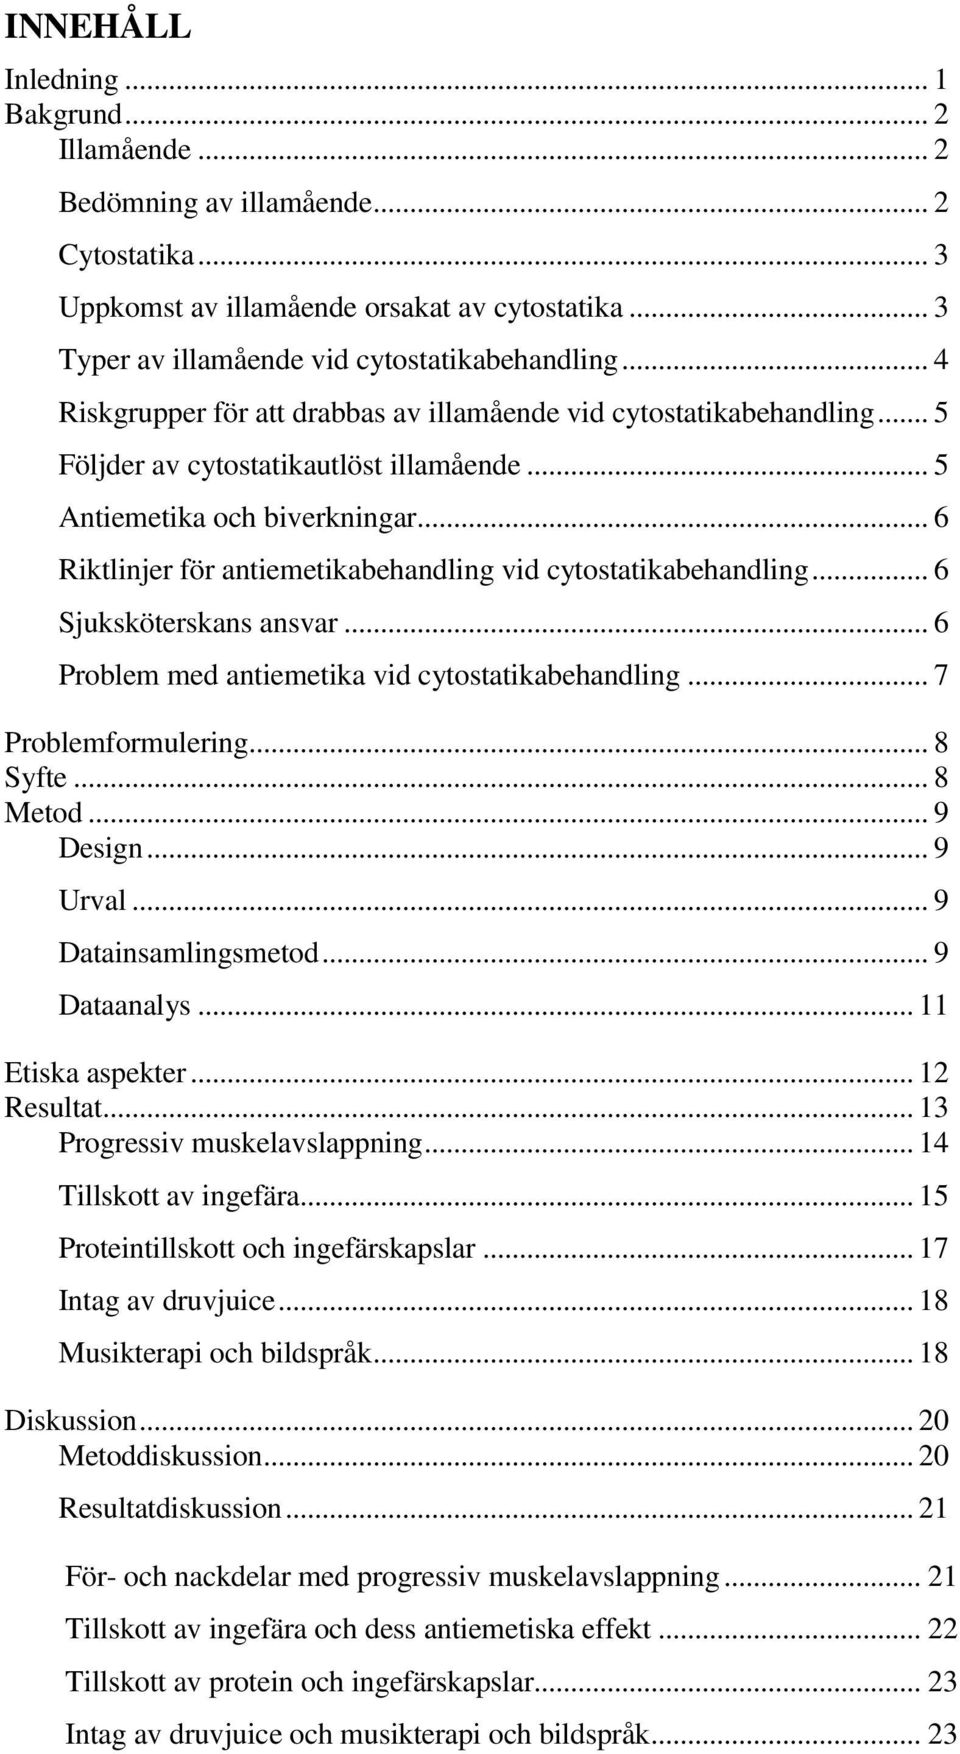 .. 6 Riktlinjer för antiemetikabehandling vid cytostatikabehandling... 6 Sjuksköterskans ansvar... 6 Problem med antiemetika vid cytostatikabehandling... 7 Problemformulering... 8 Syfte... 8 Metod.